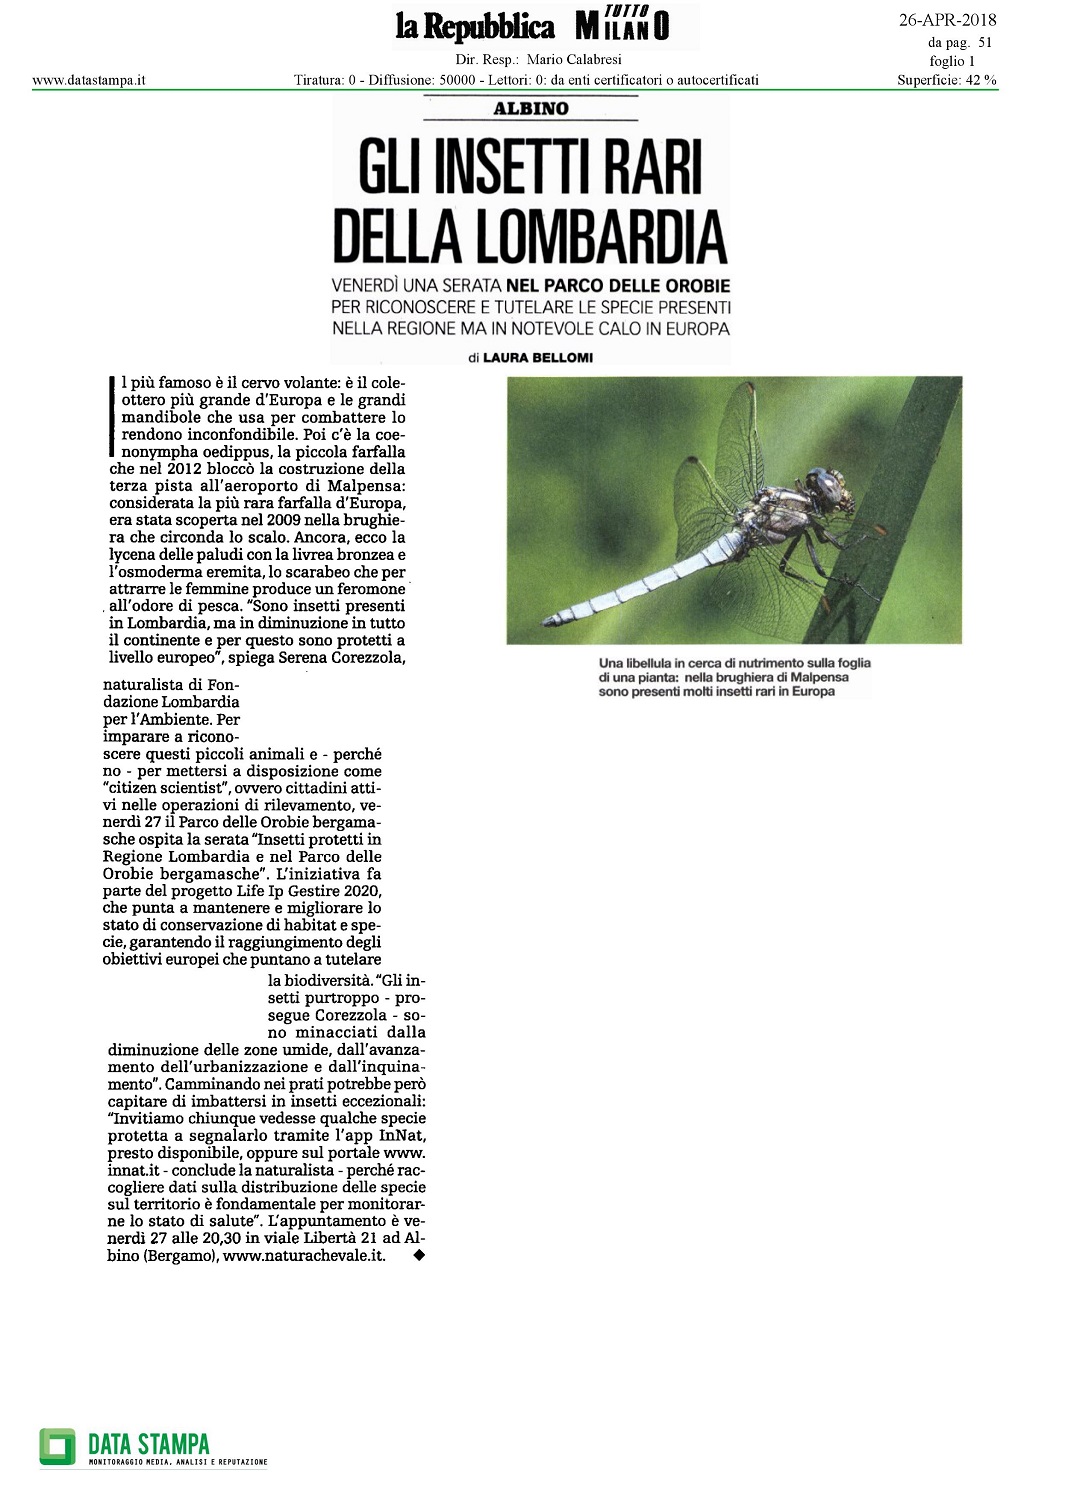 20180426-La-Repubblica-Milano.jpg